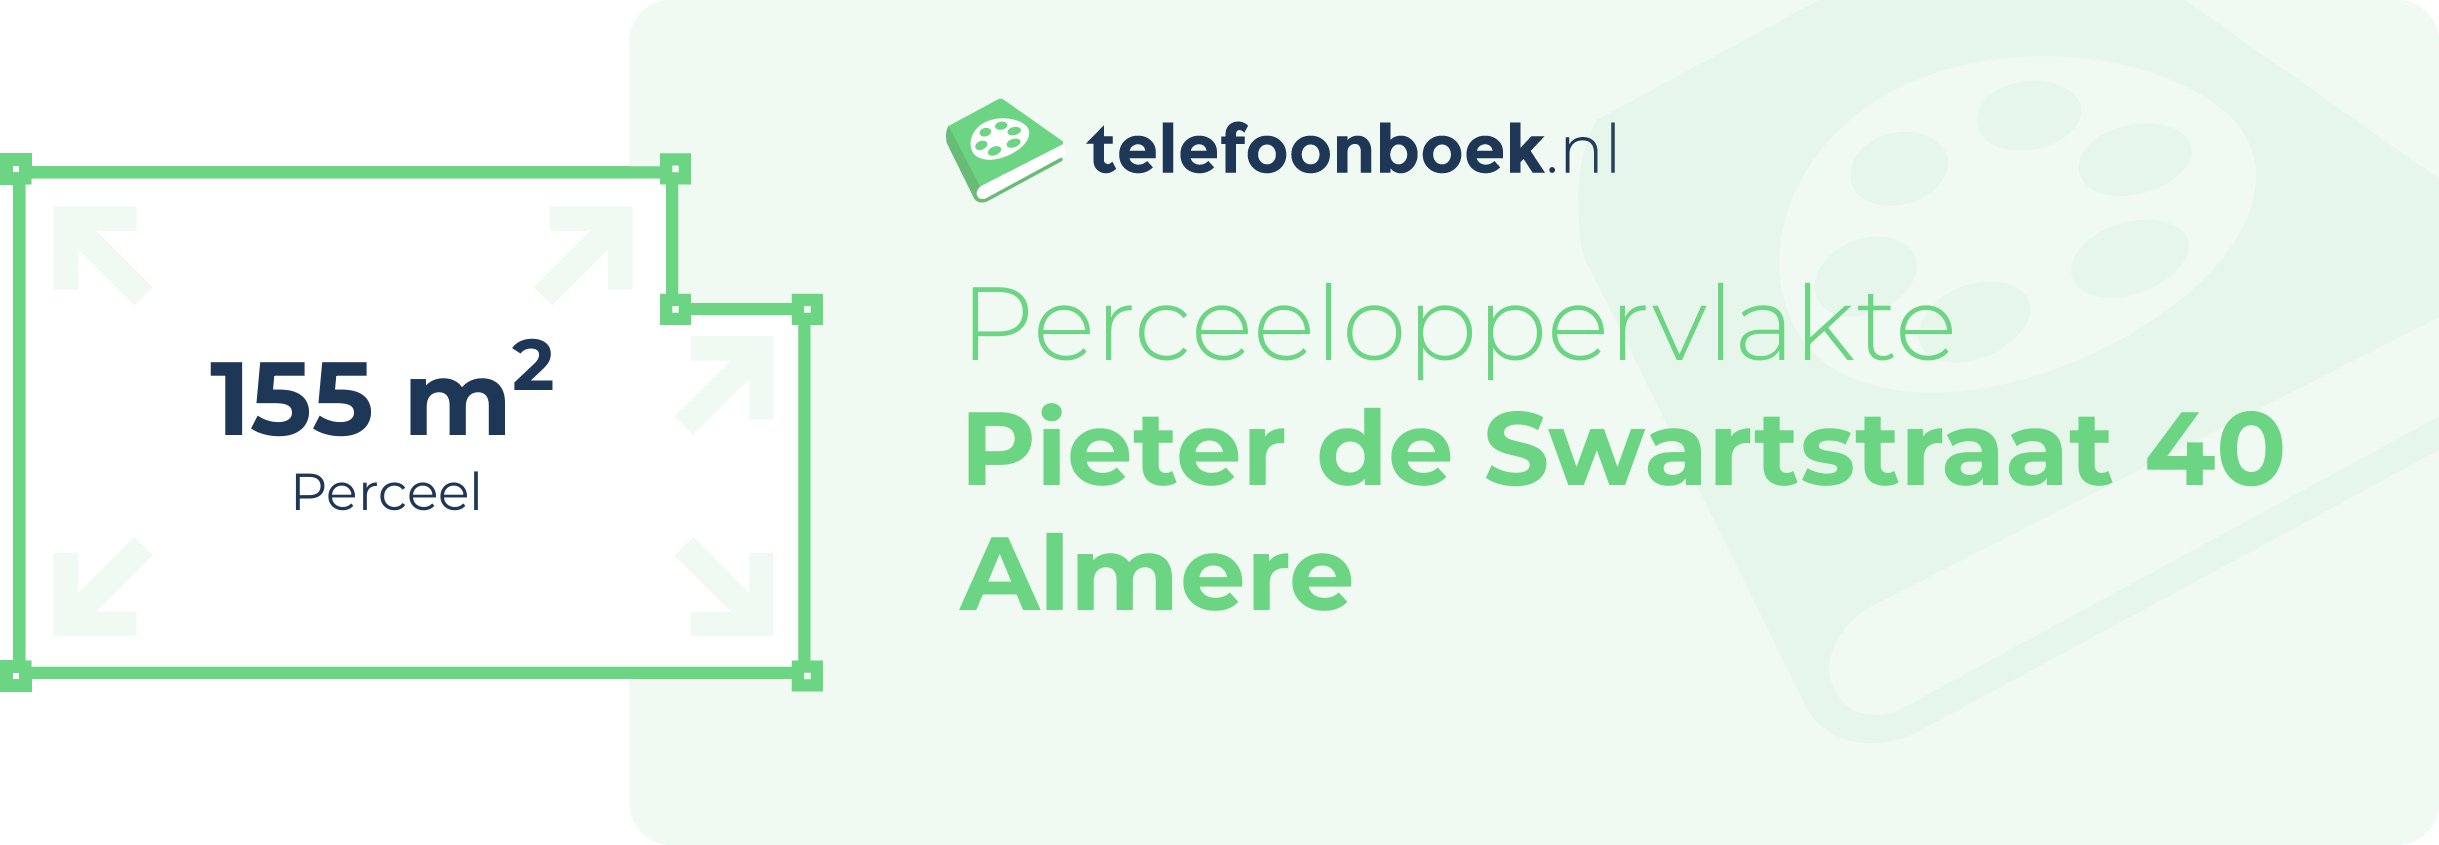 Perceeloppervlakte Pieter De Swartstraat 40 Almere